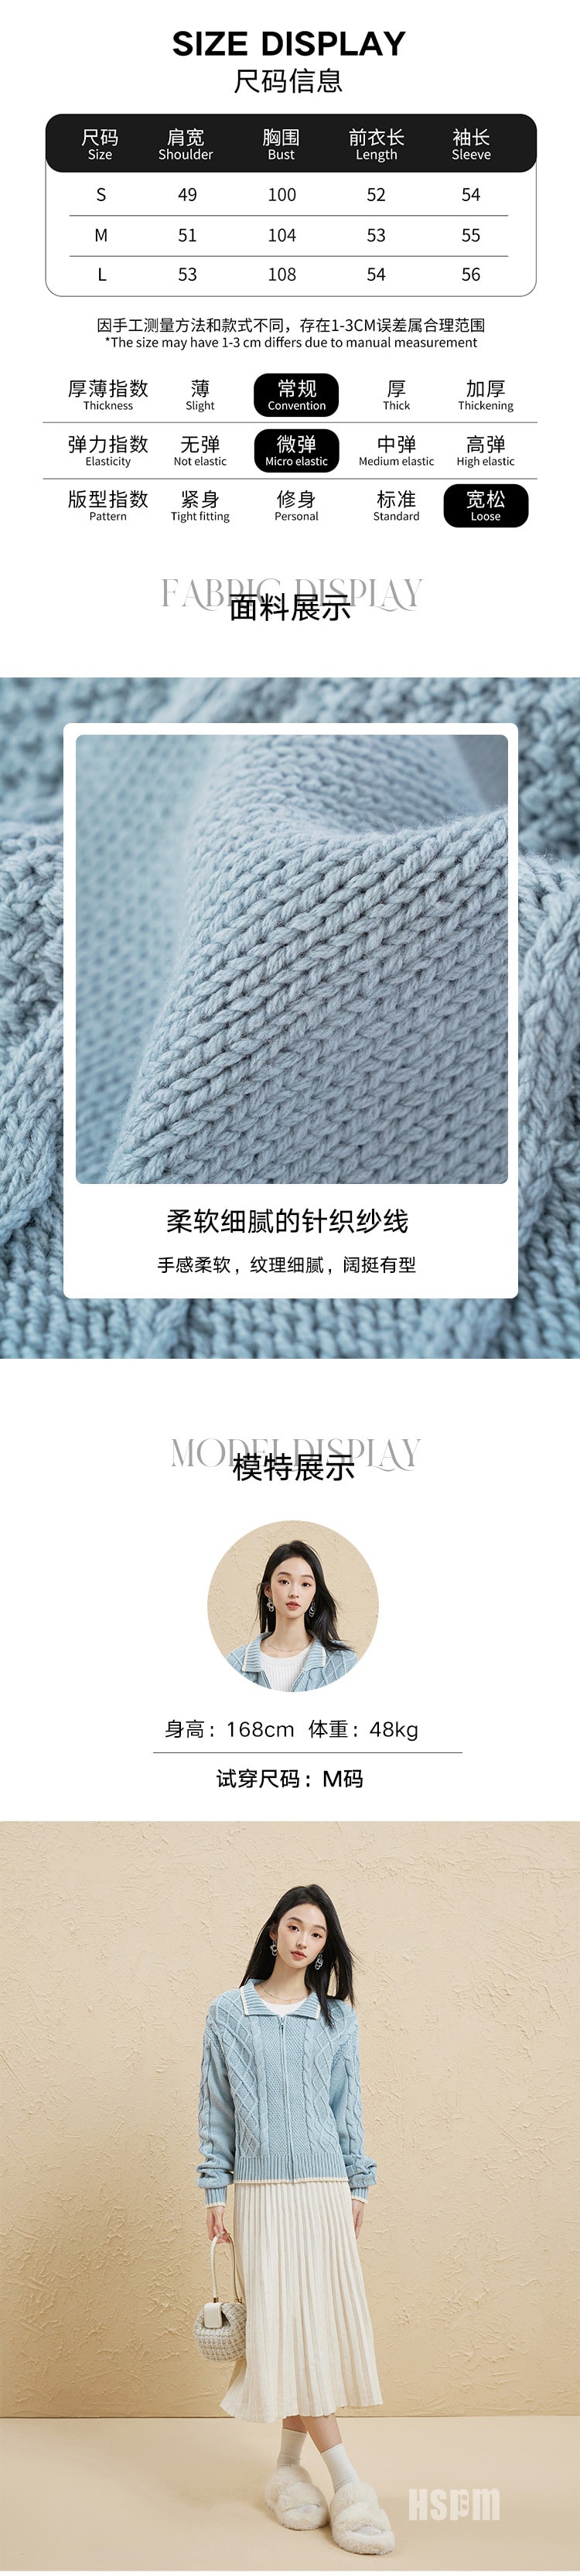 【中国直邮】HSPM 新款绞花肌理毛衣开衫 蓝灰色 S